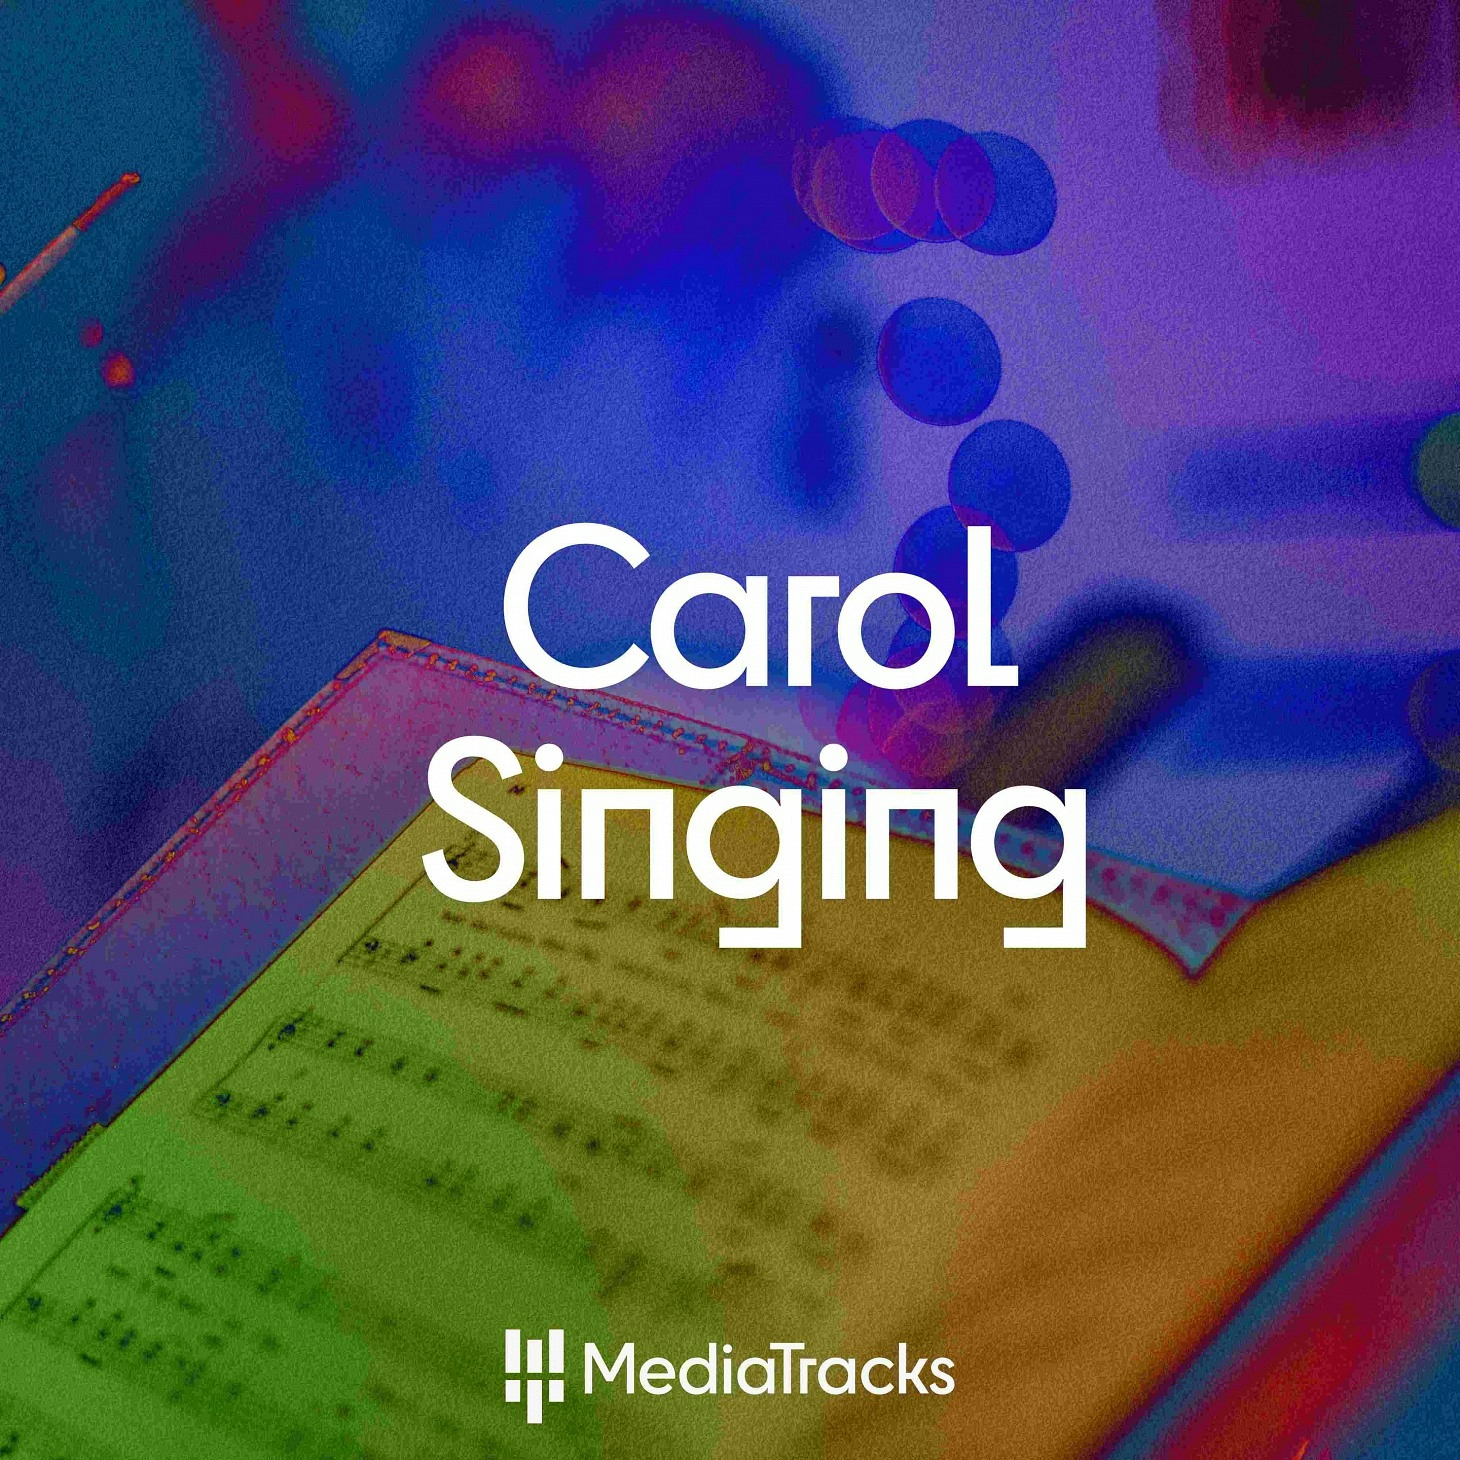 Carol Singing